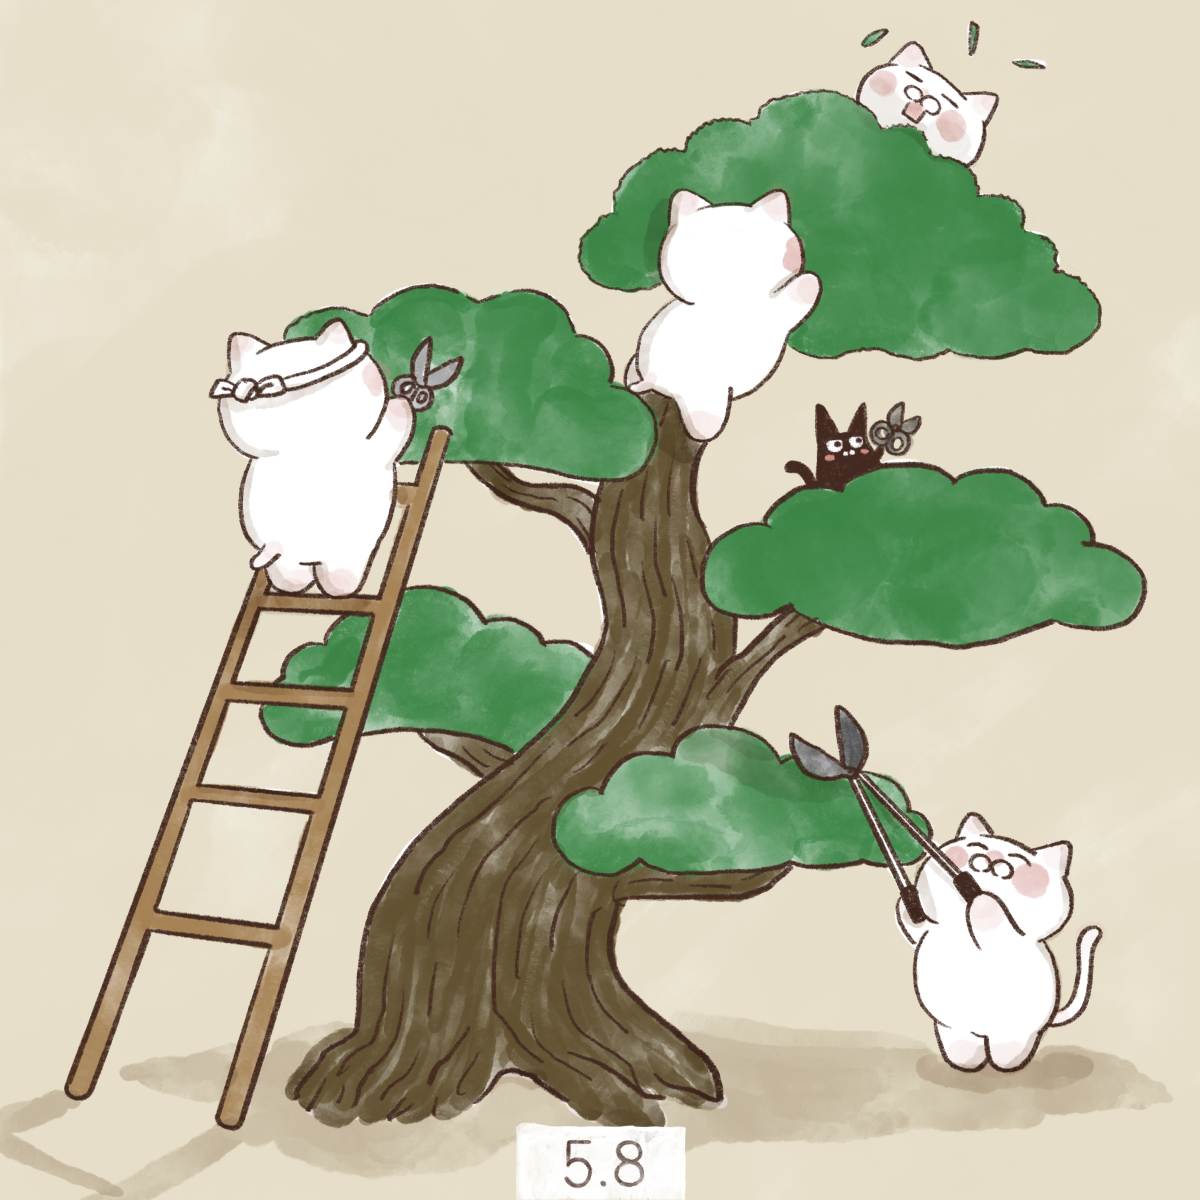 「5月8日【松の日】
1981年5月8日、「日本の松を守る会」の初の全国大会が開催」|大和猫のイラスト